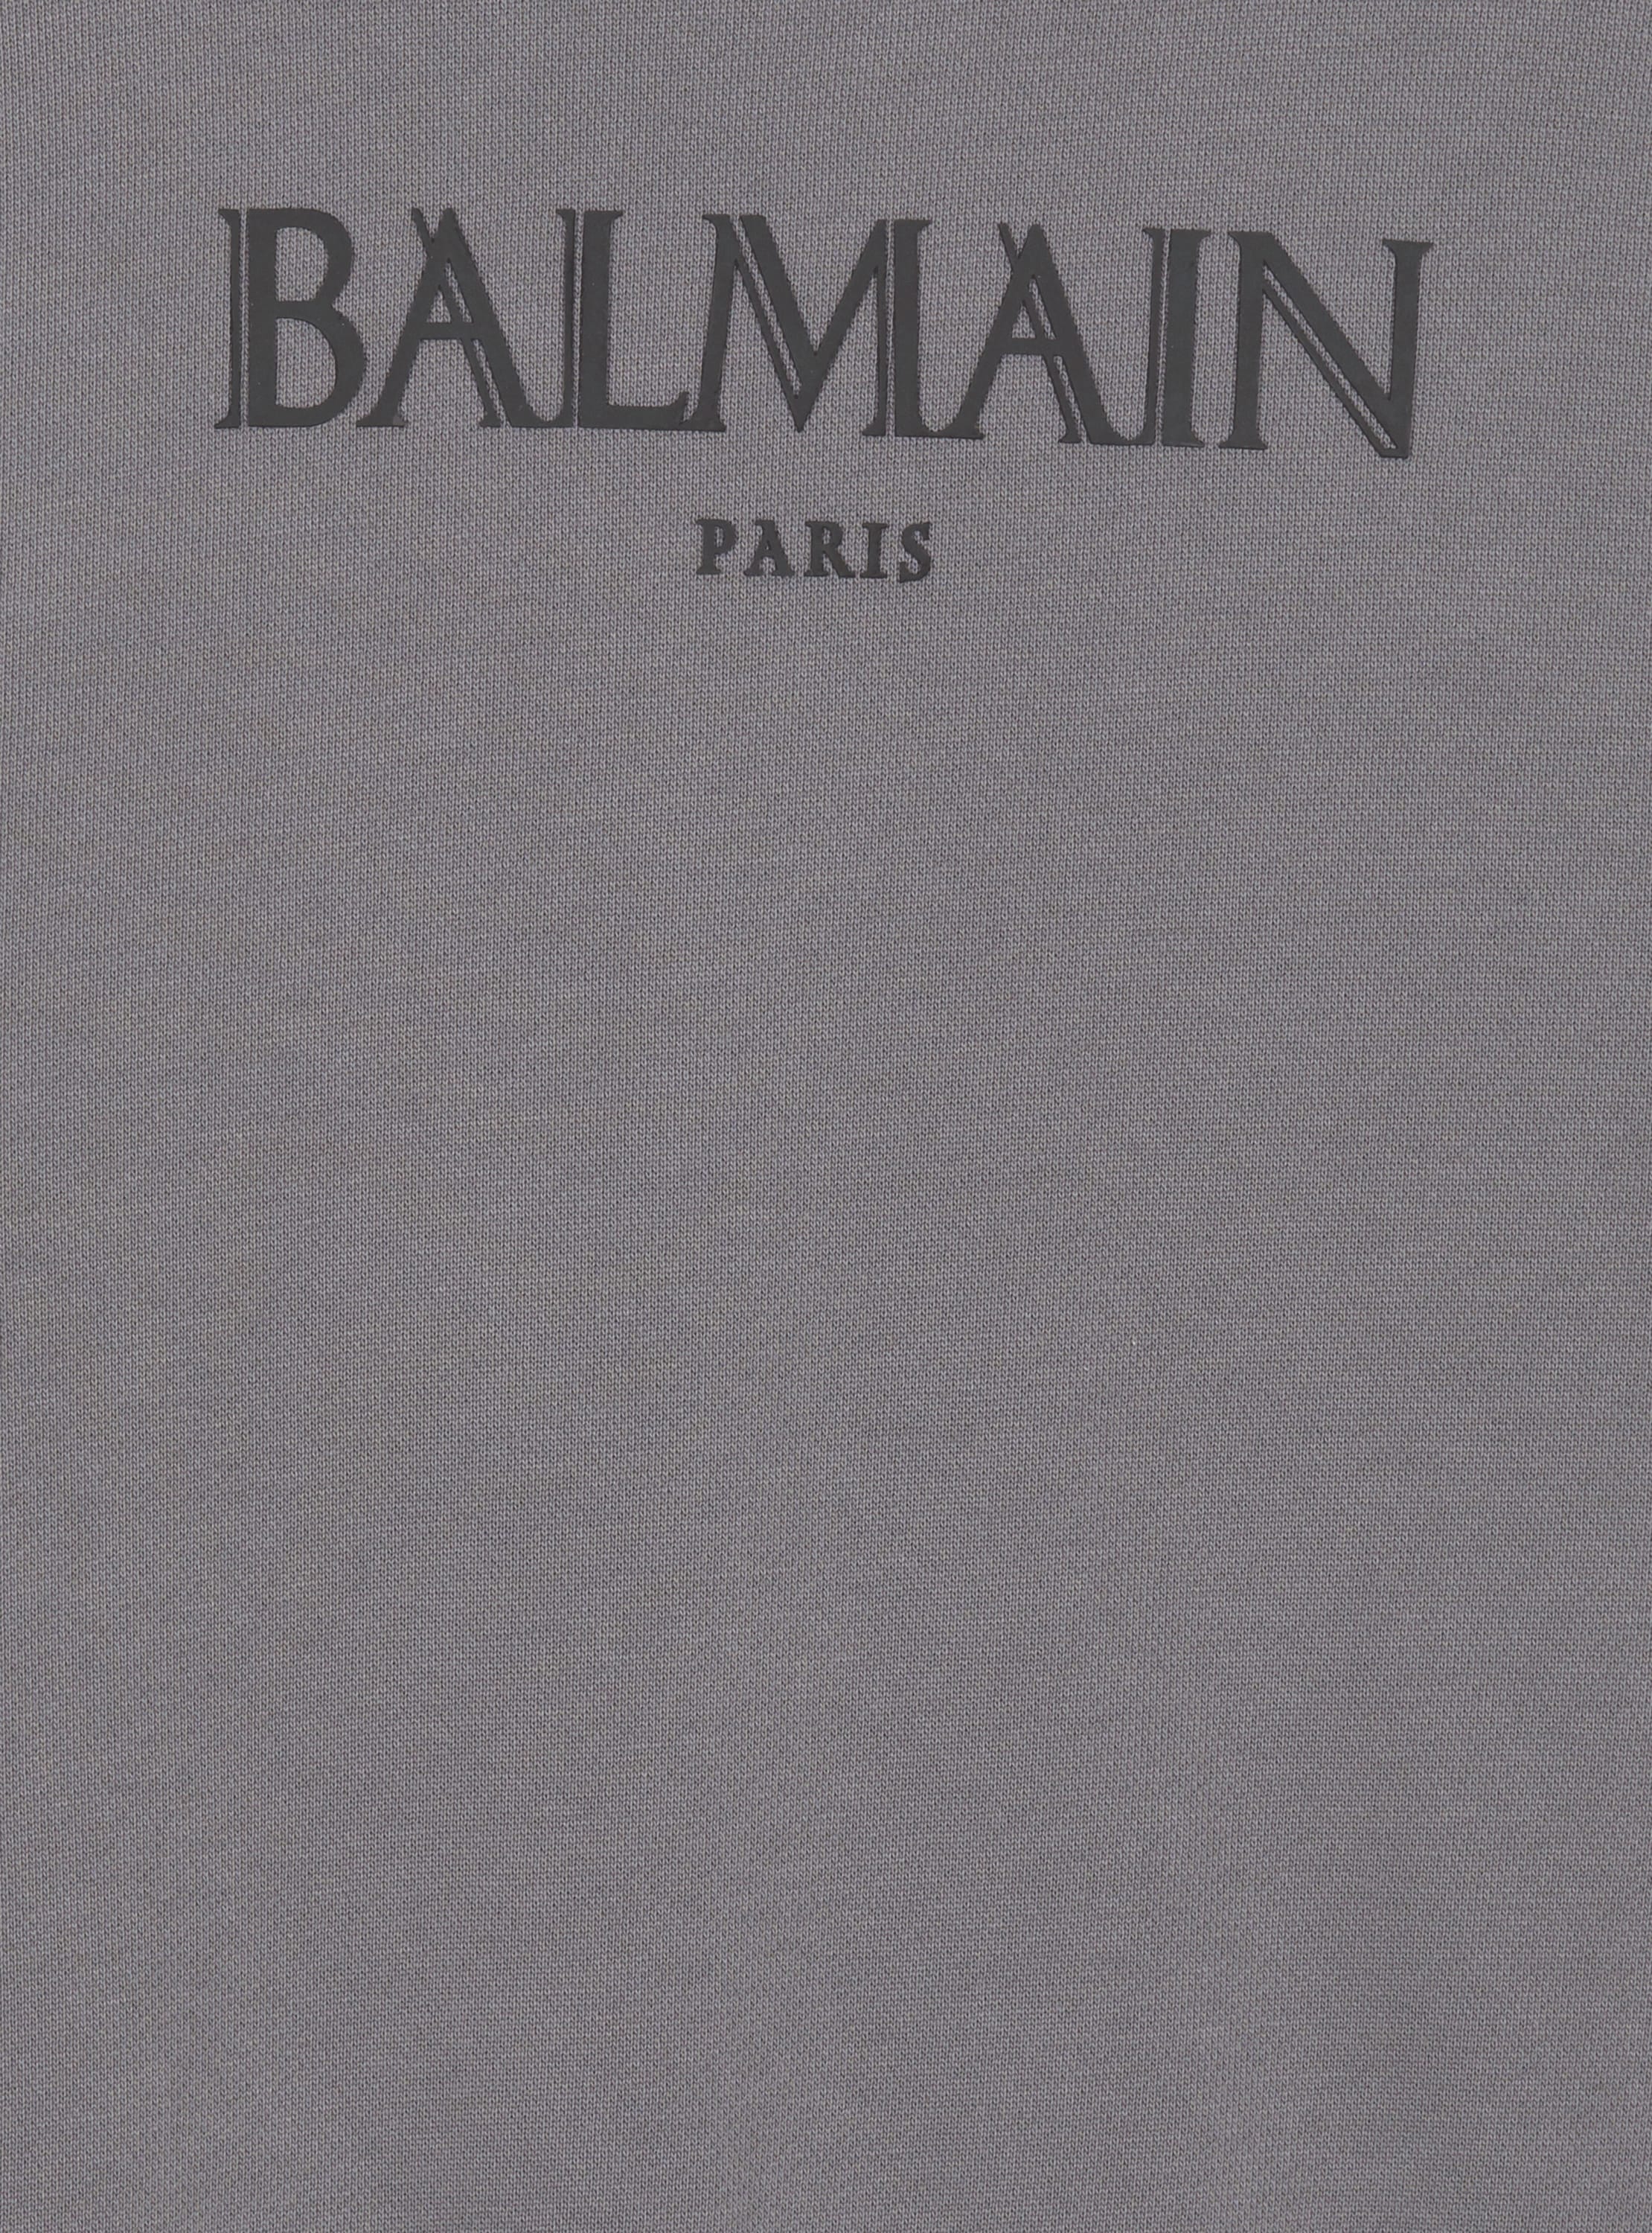 Sweat-shirt Balmain Romain